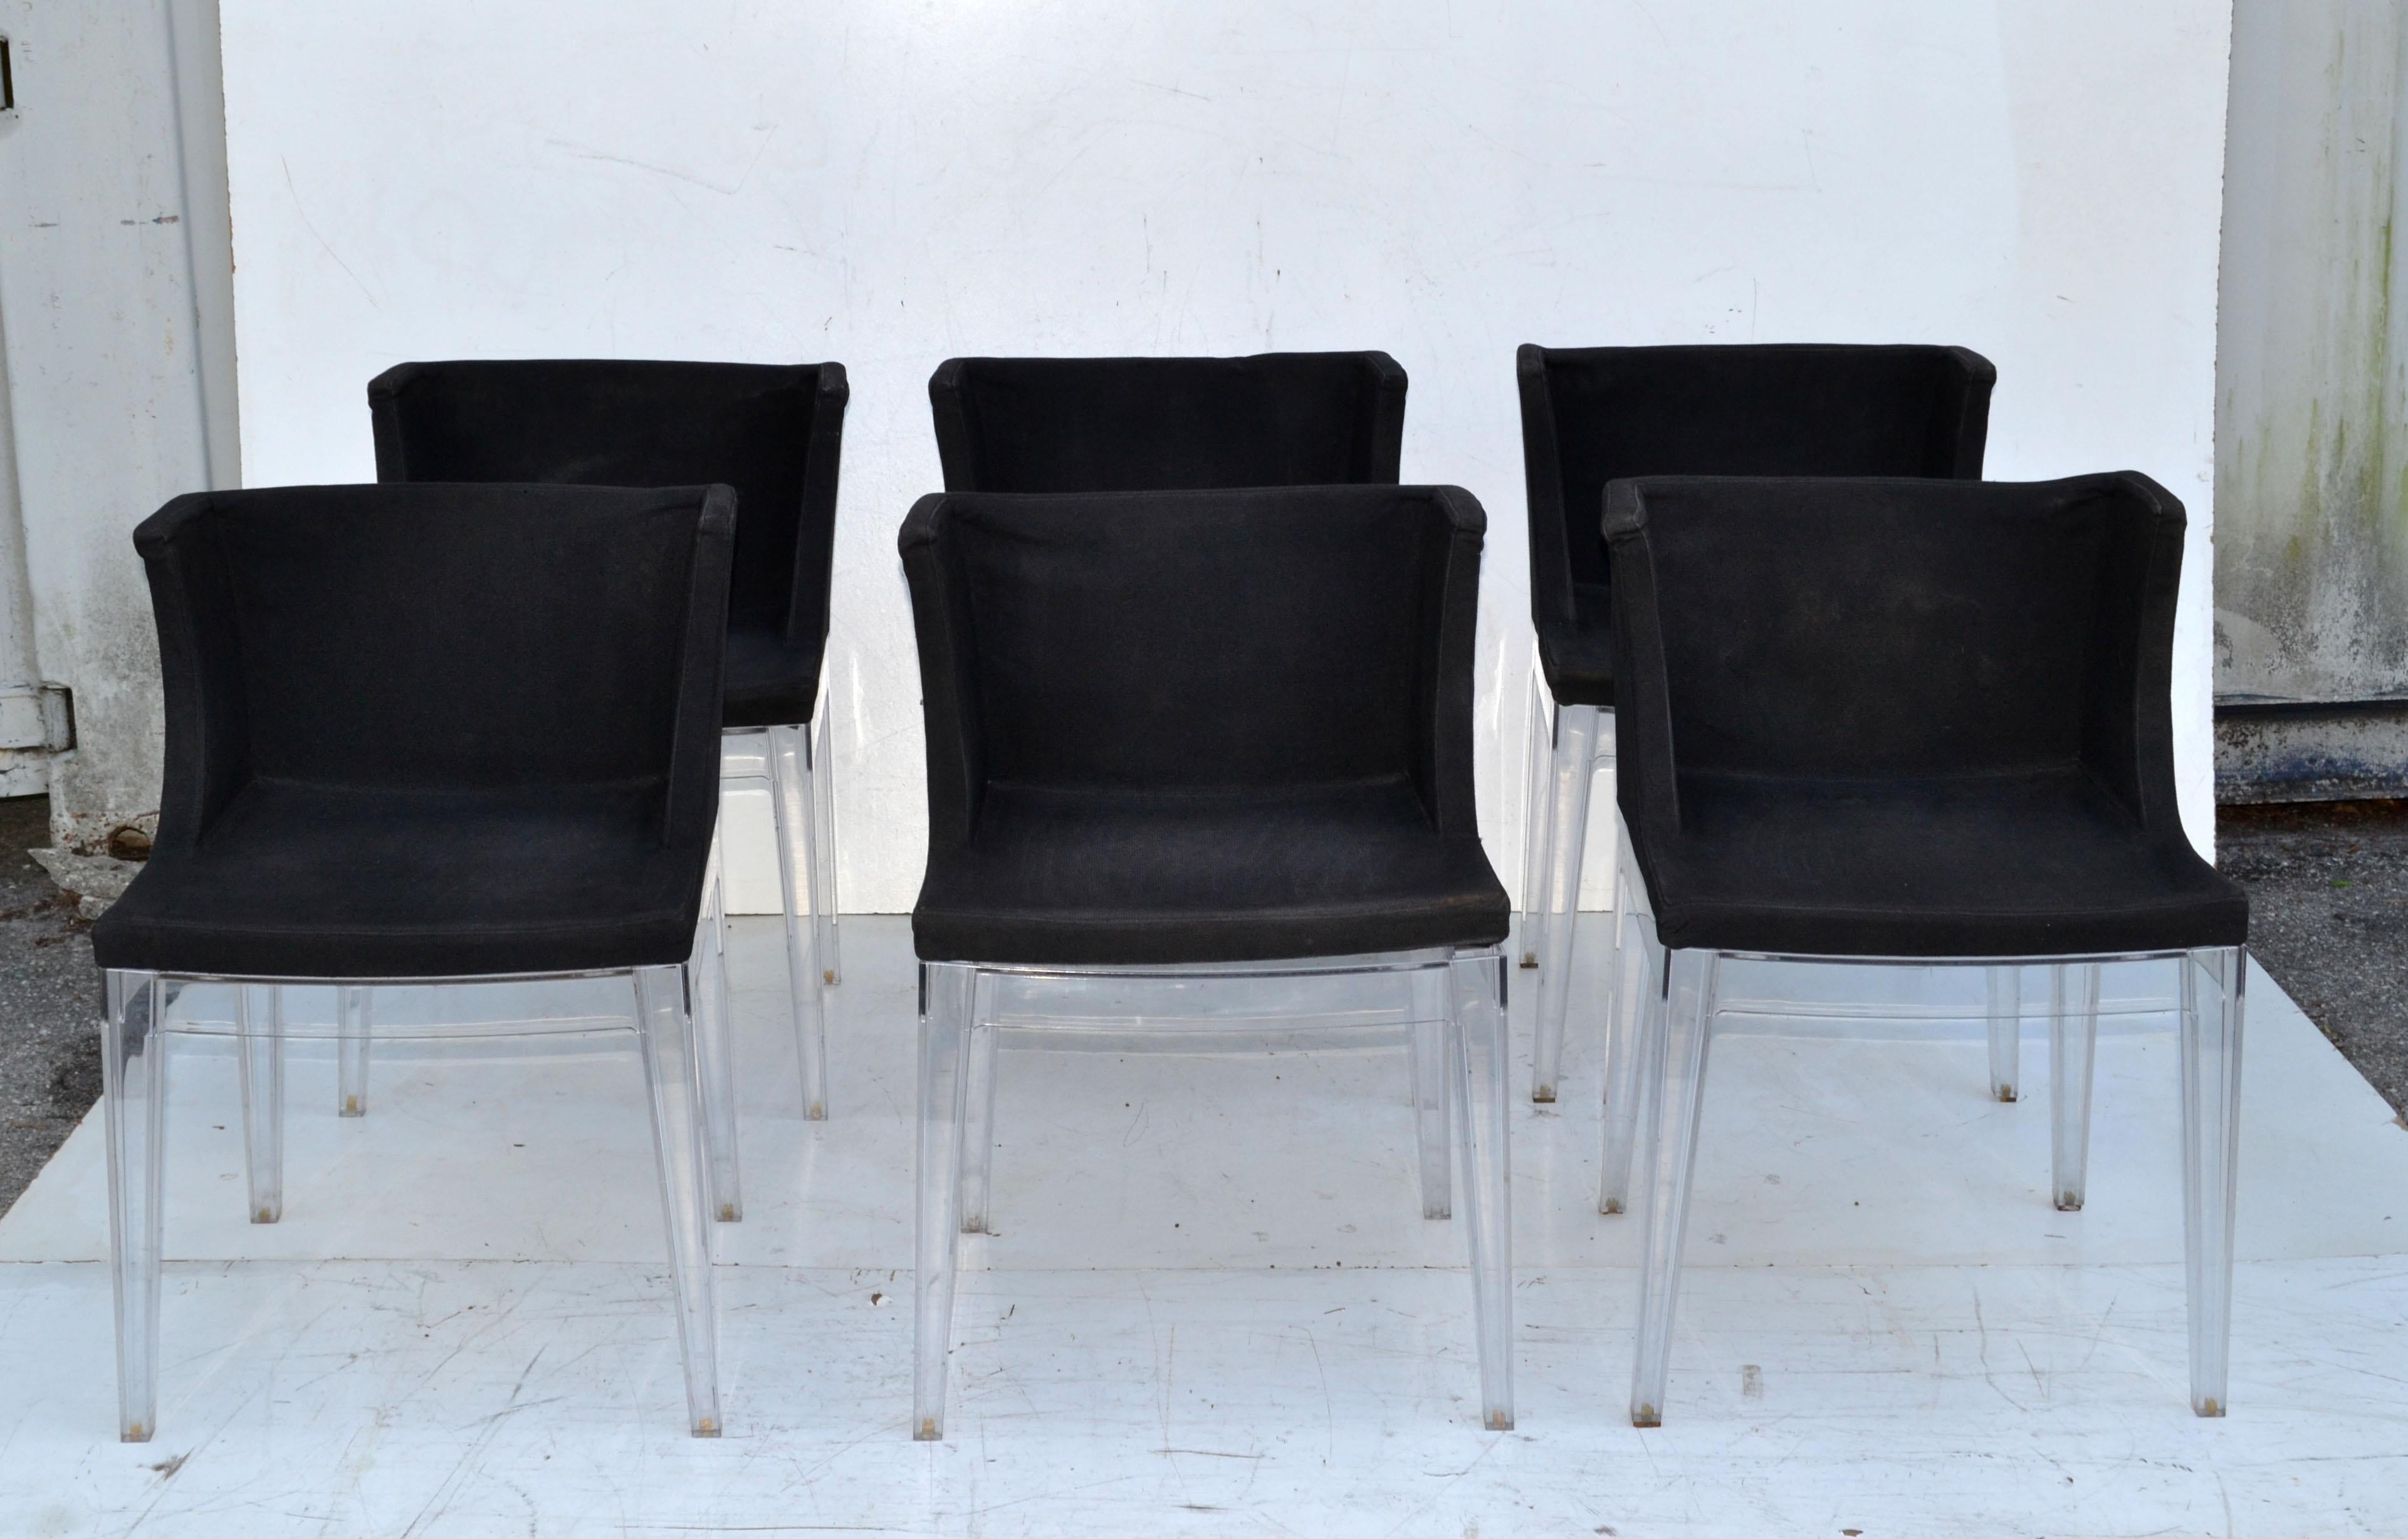 Vintage Ensemble de 6 fauteuils ou chaises Mademoiselle en coton noir d'origine et avec des cadres en Lucite transparent.
Conçu par Philippe Starck et fabriqué en Italie par Kartell dans les années 1970.
Etat d'origine avec usure des patins due à